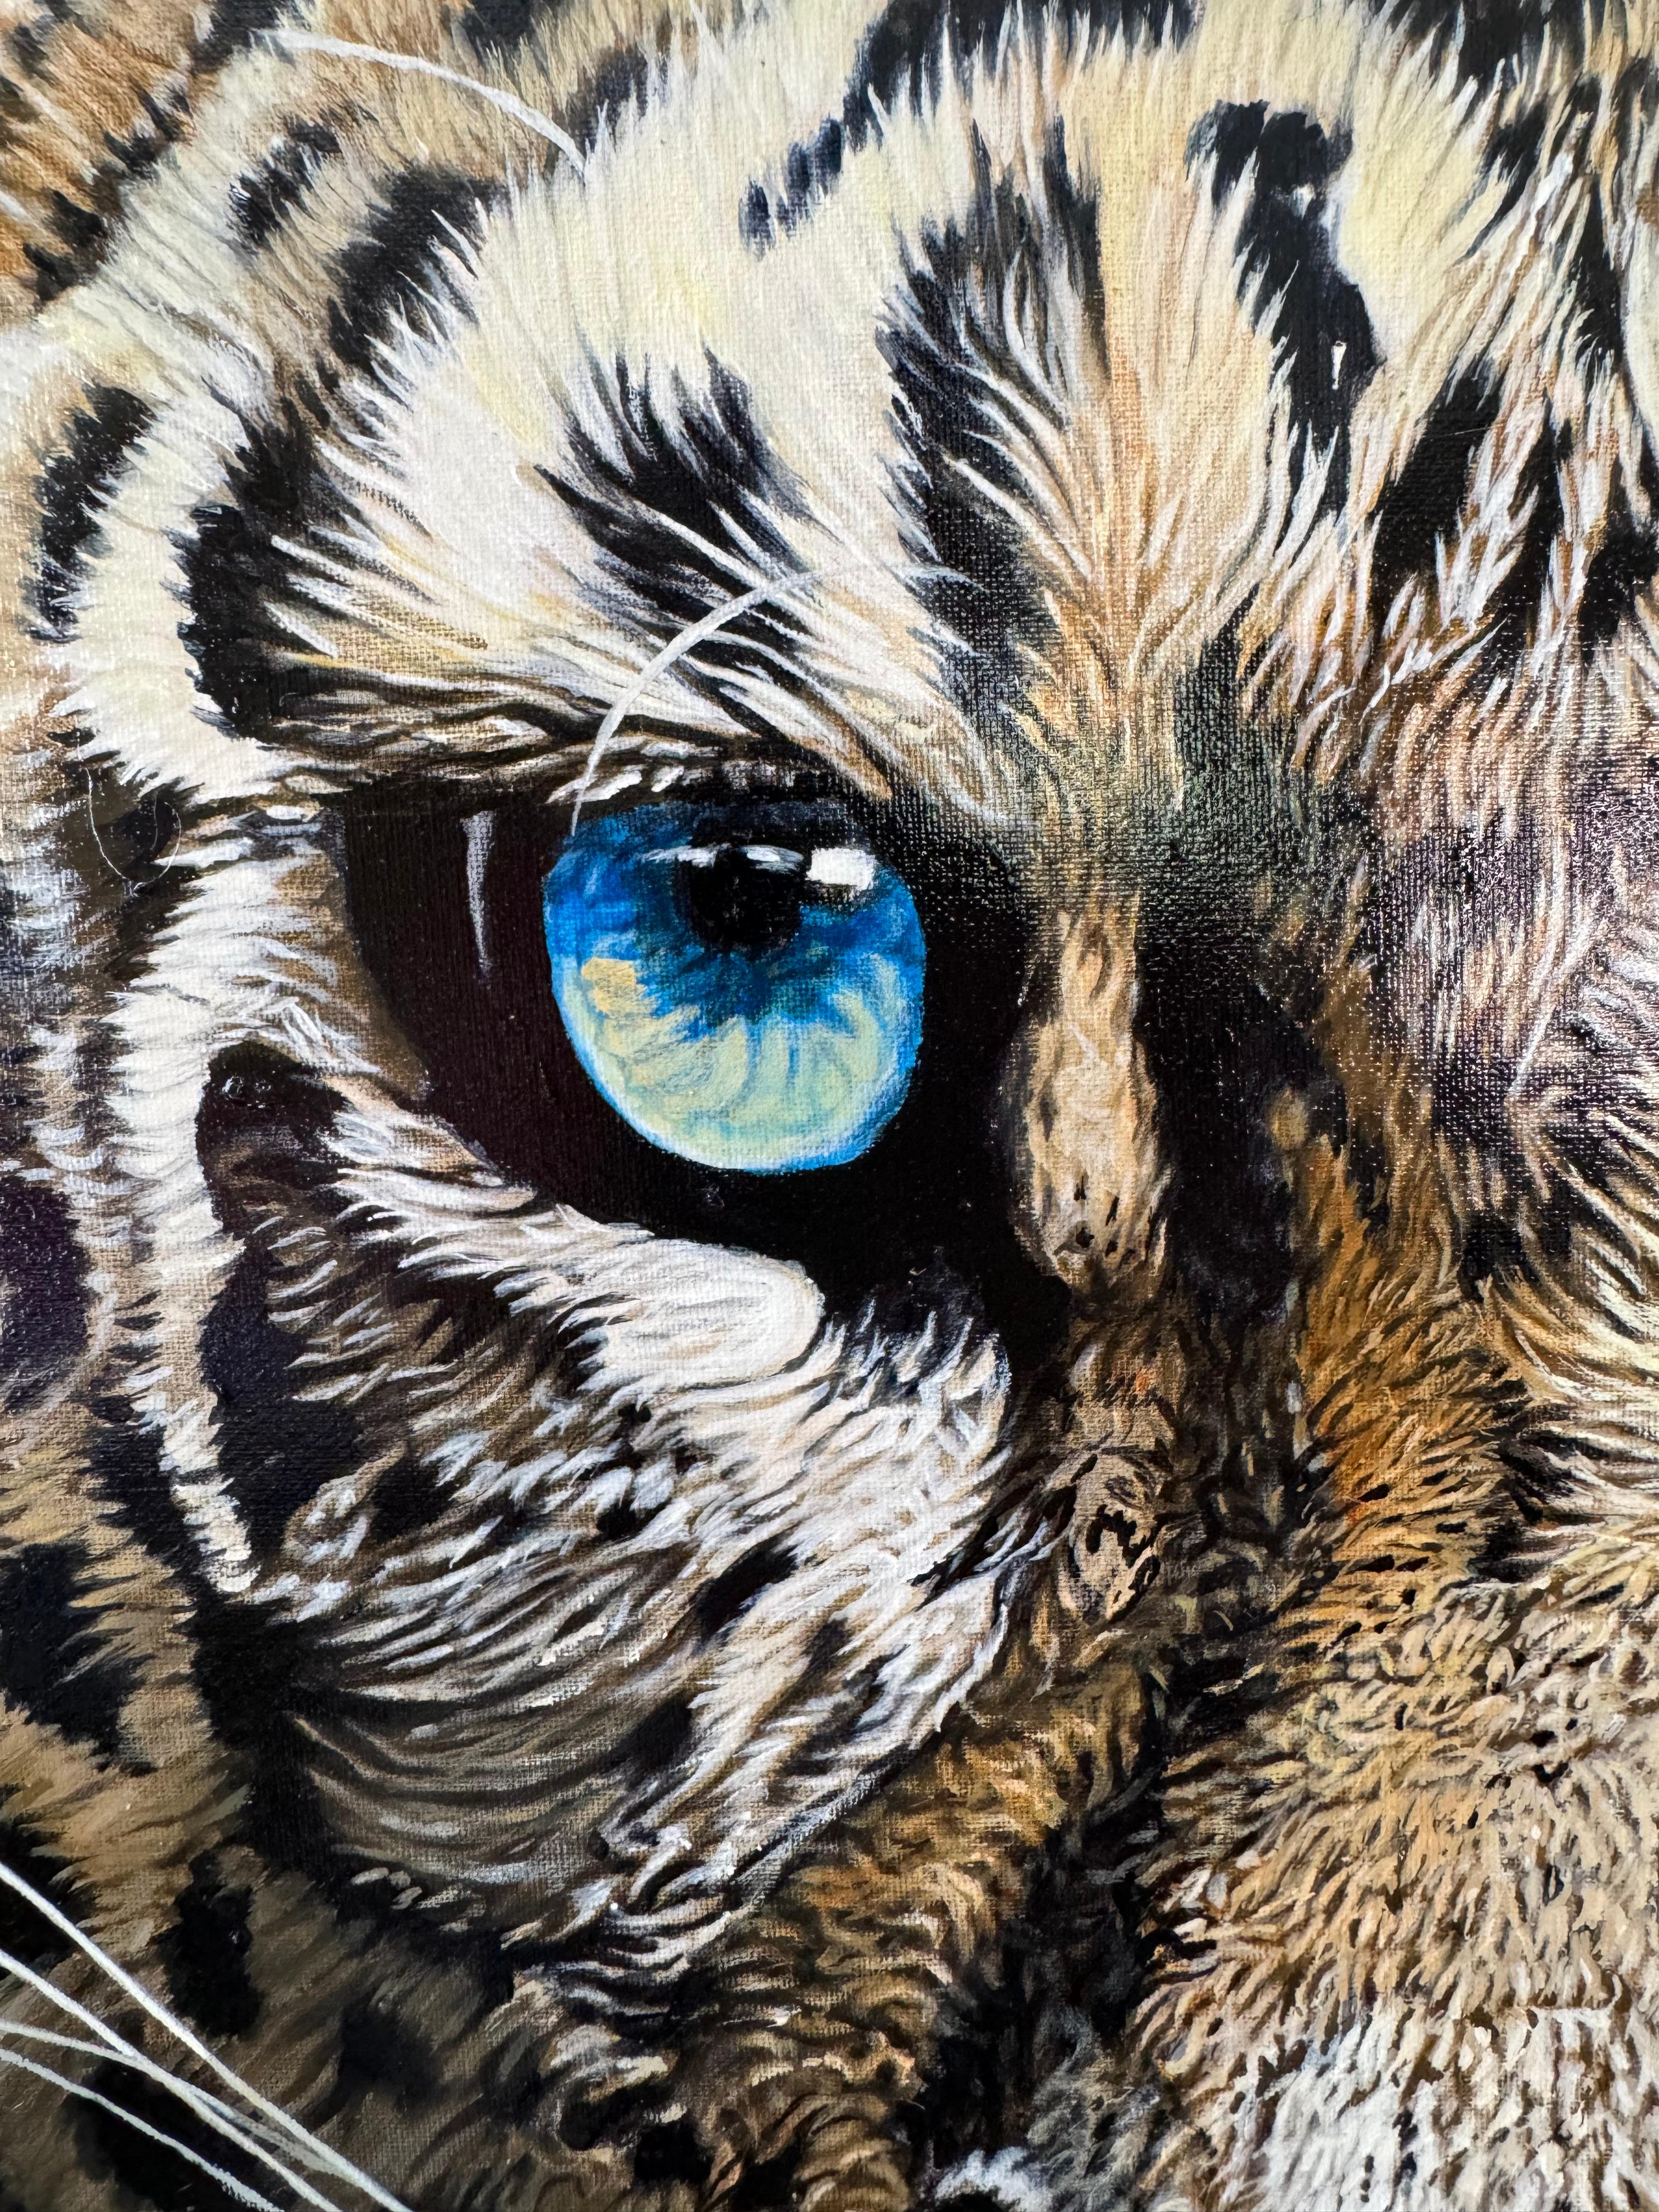 Porträt eines Leoparden – Painting von Pierre-Yves Blasco